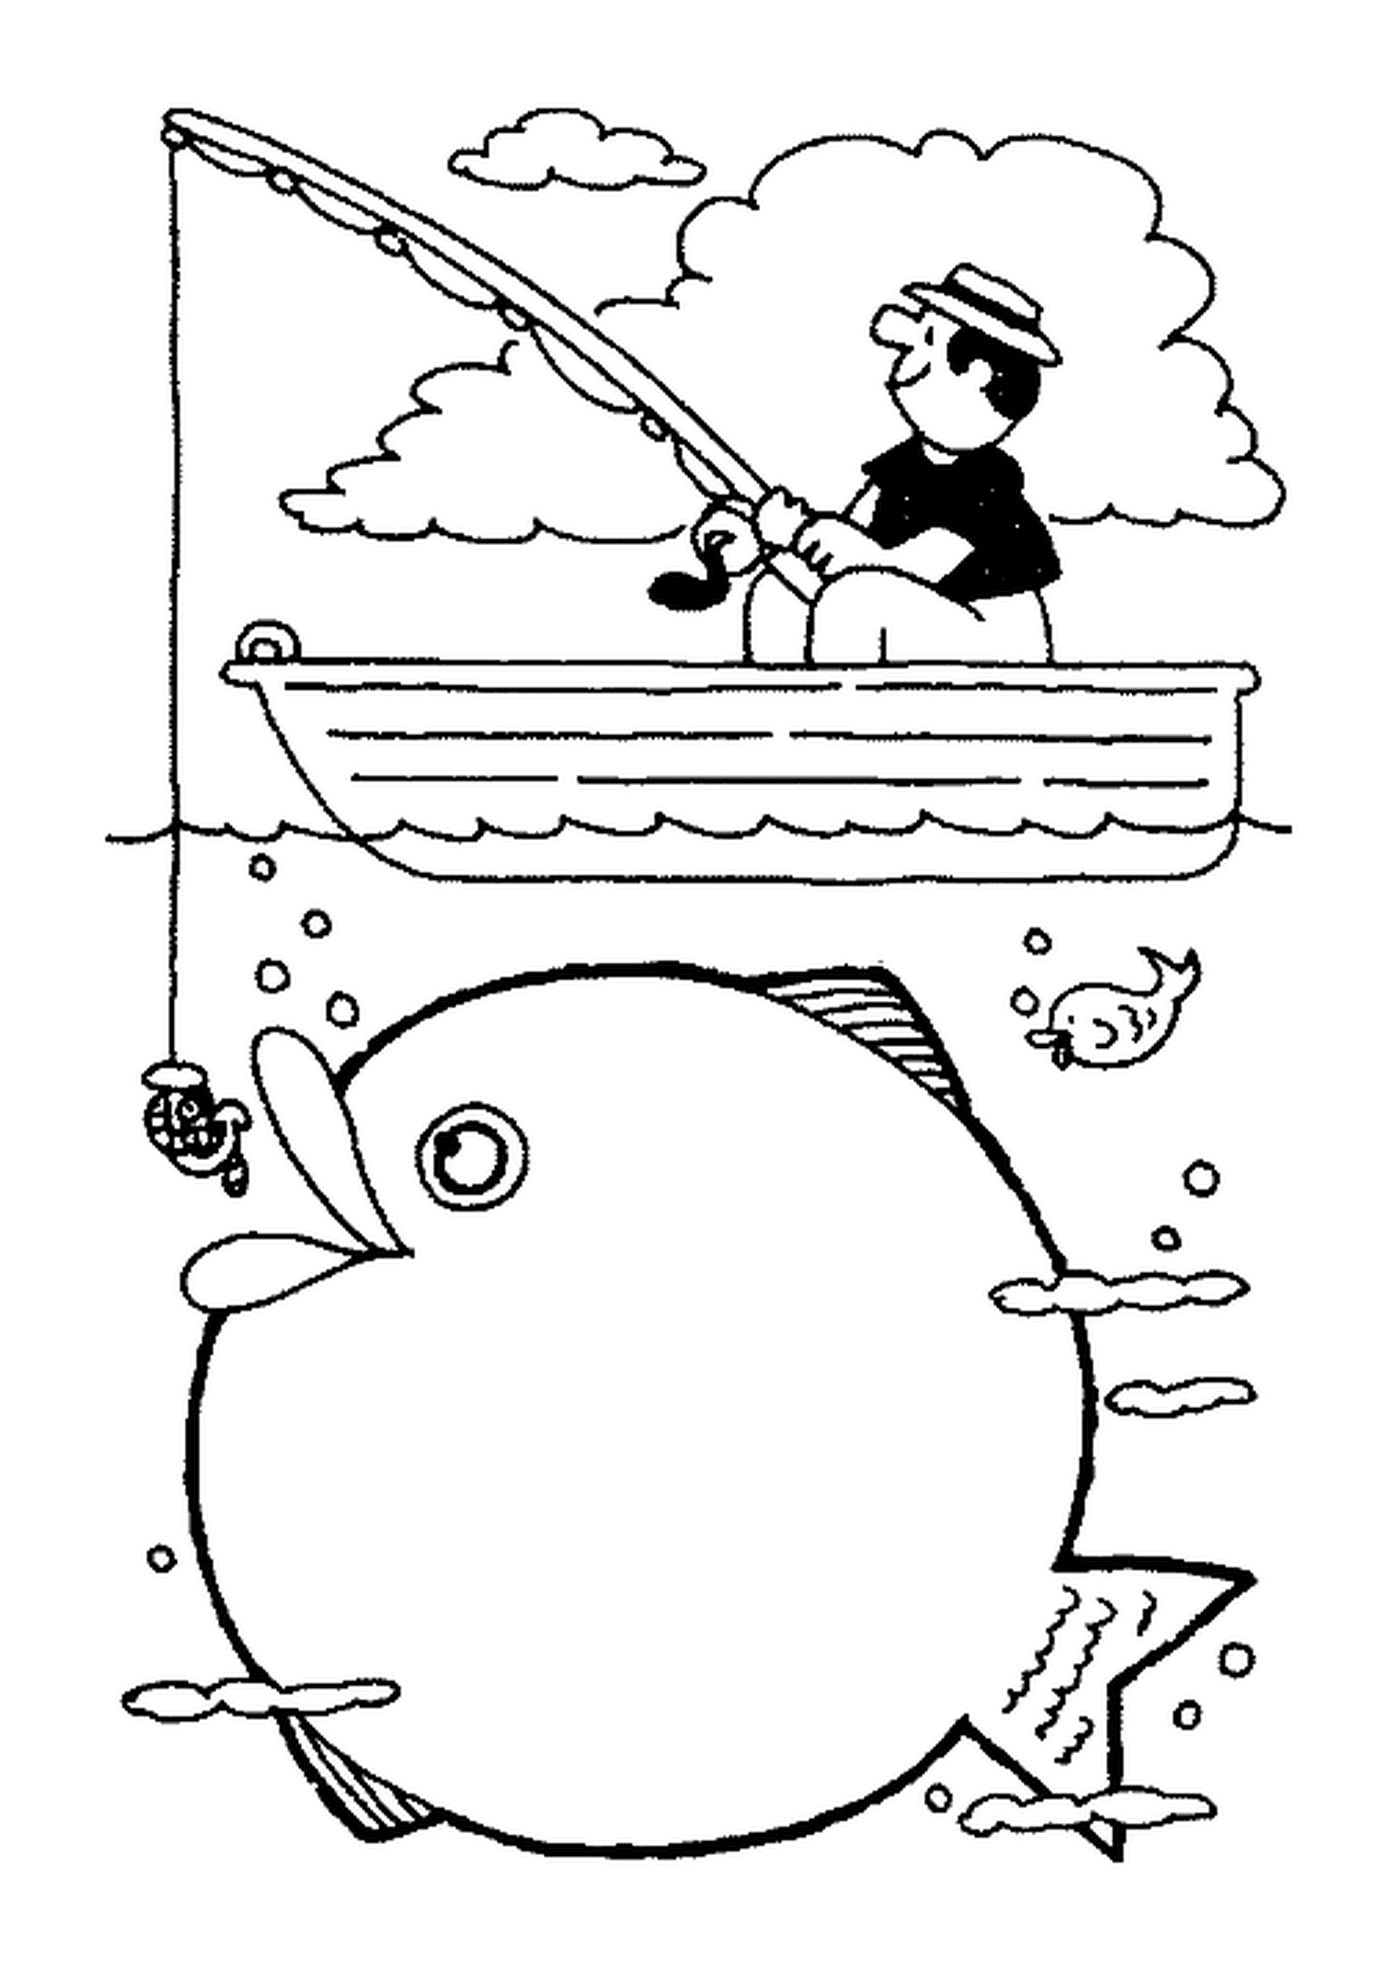  Человек рыбачит в лодке 